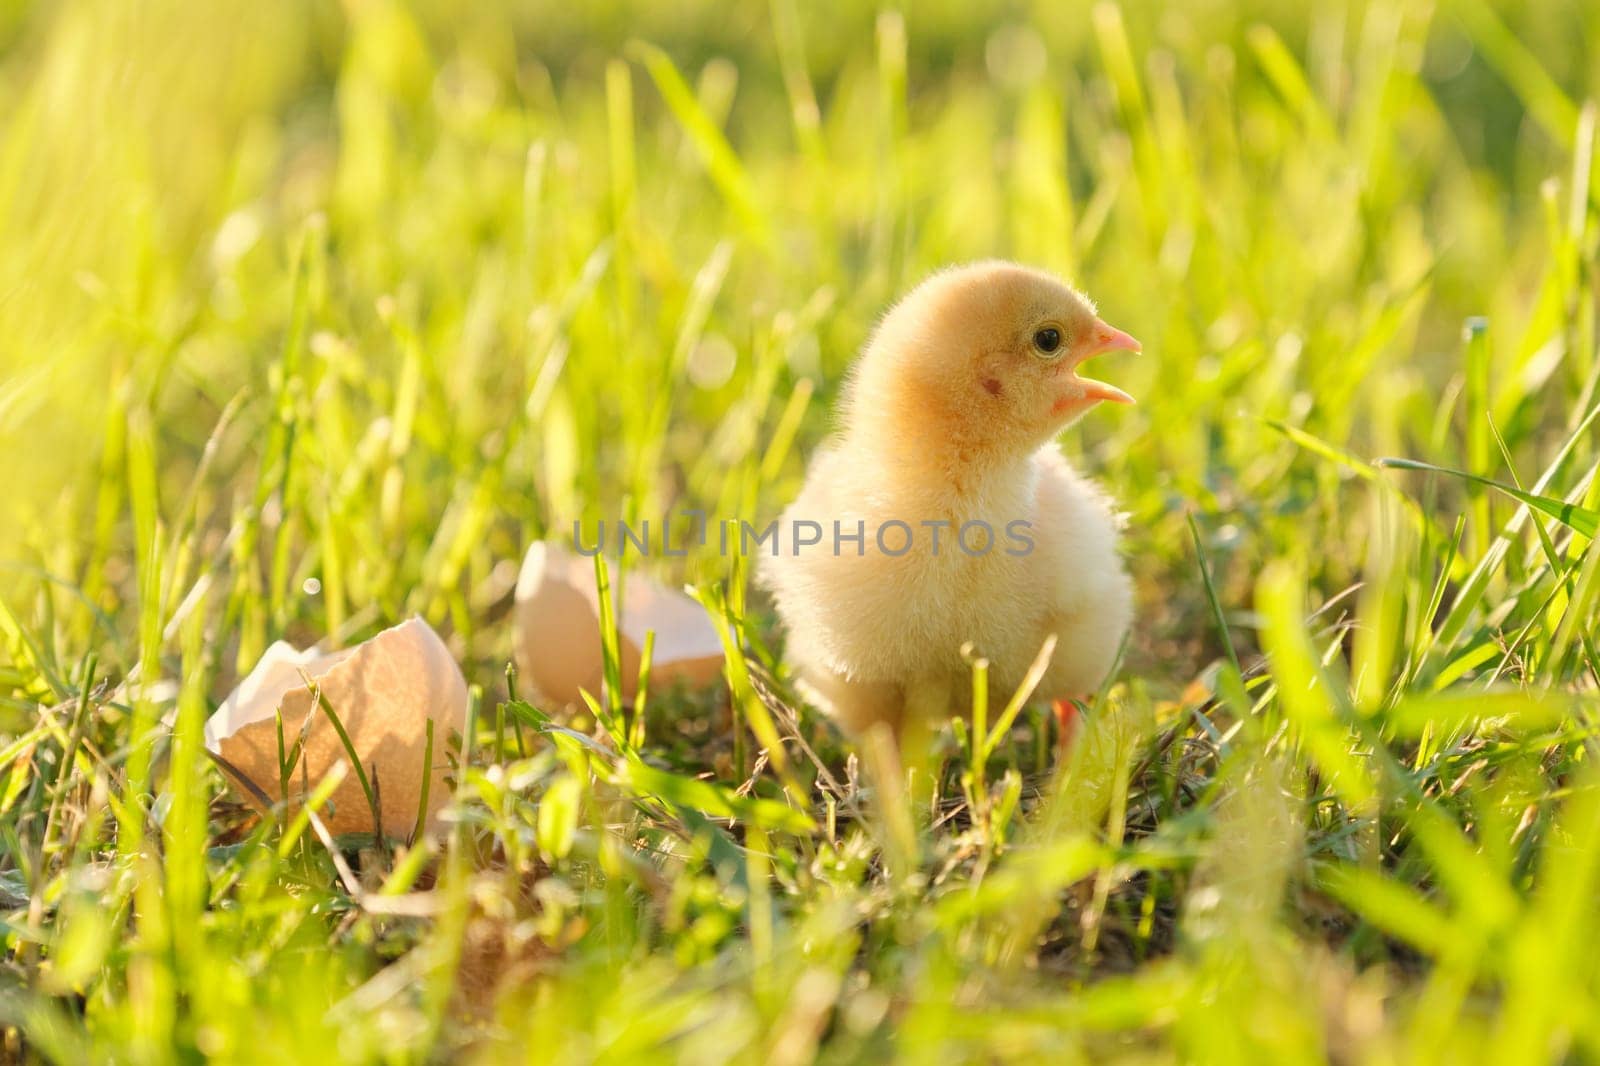 Newborn chicken with eggshell, green grass background in sunlight.